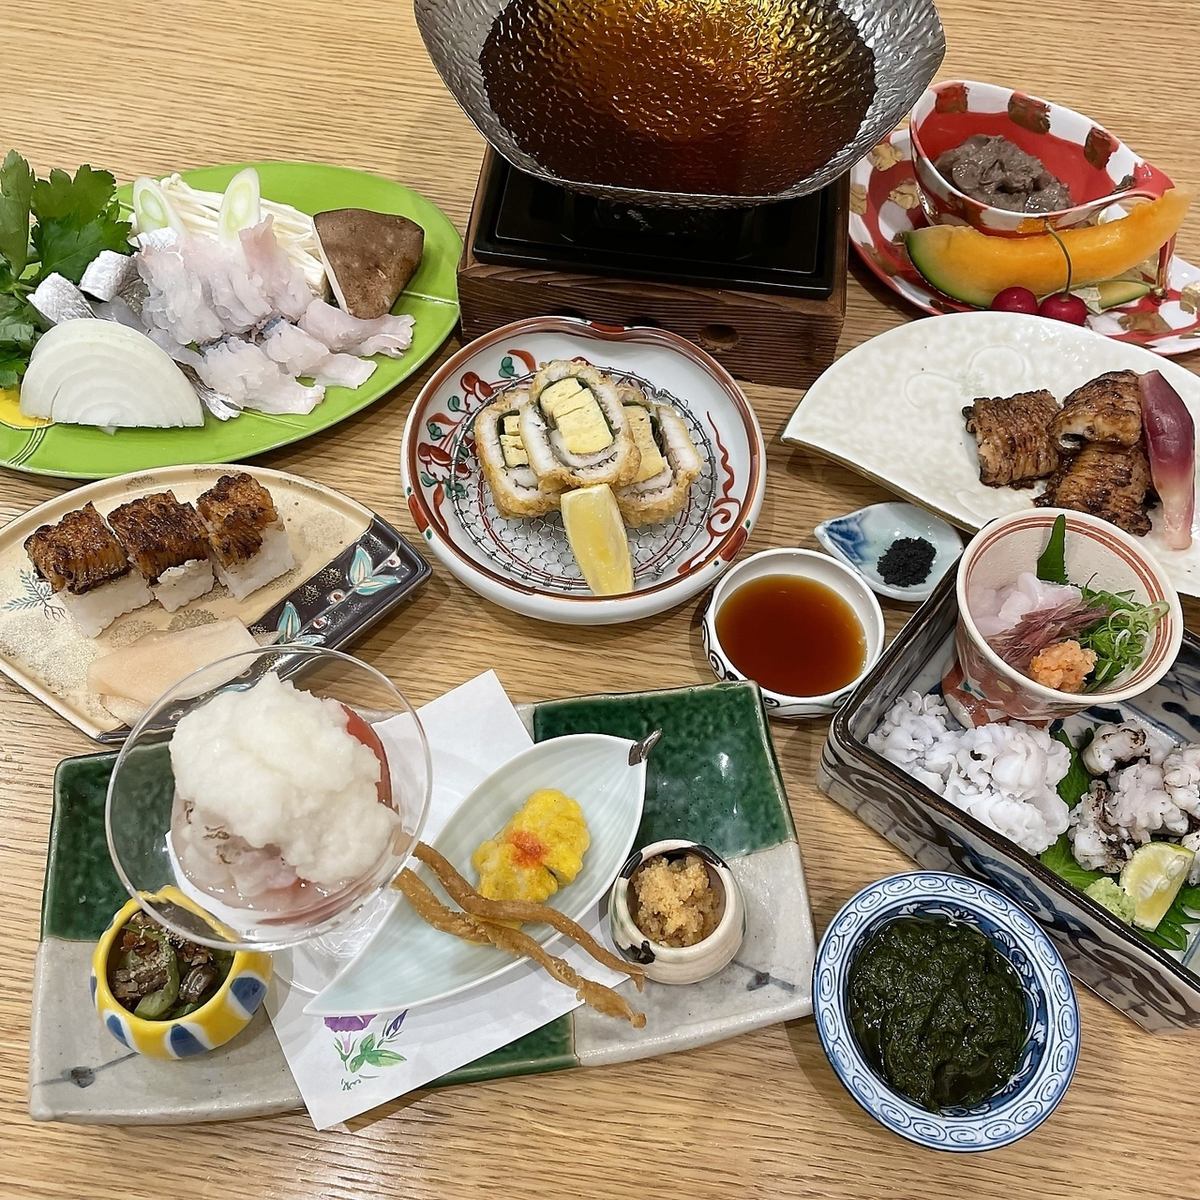 您可以享受礼貌和精致的菜肴。精湛技艺闪耀的日式餐厅。